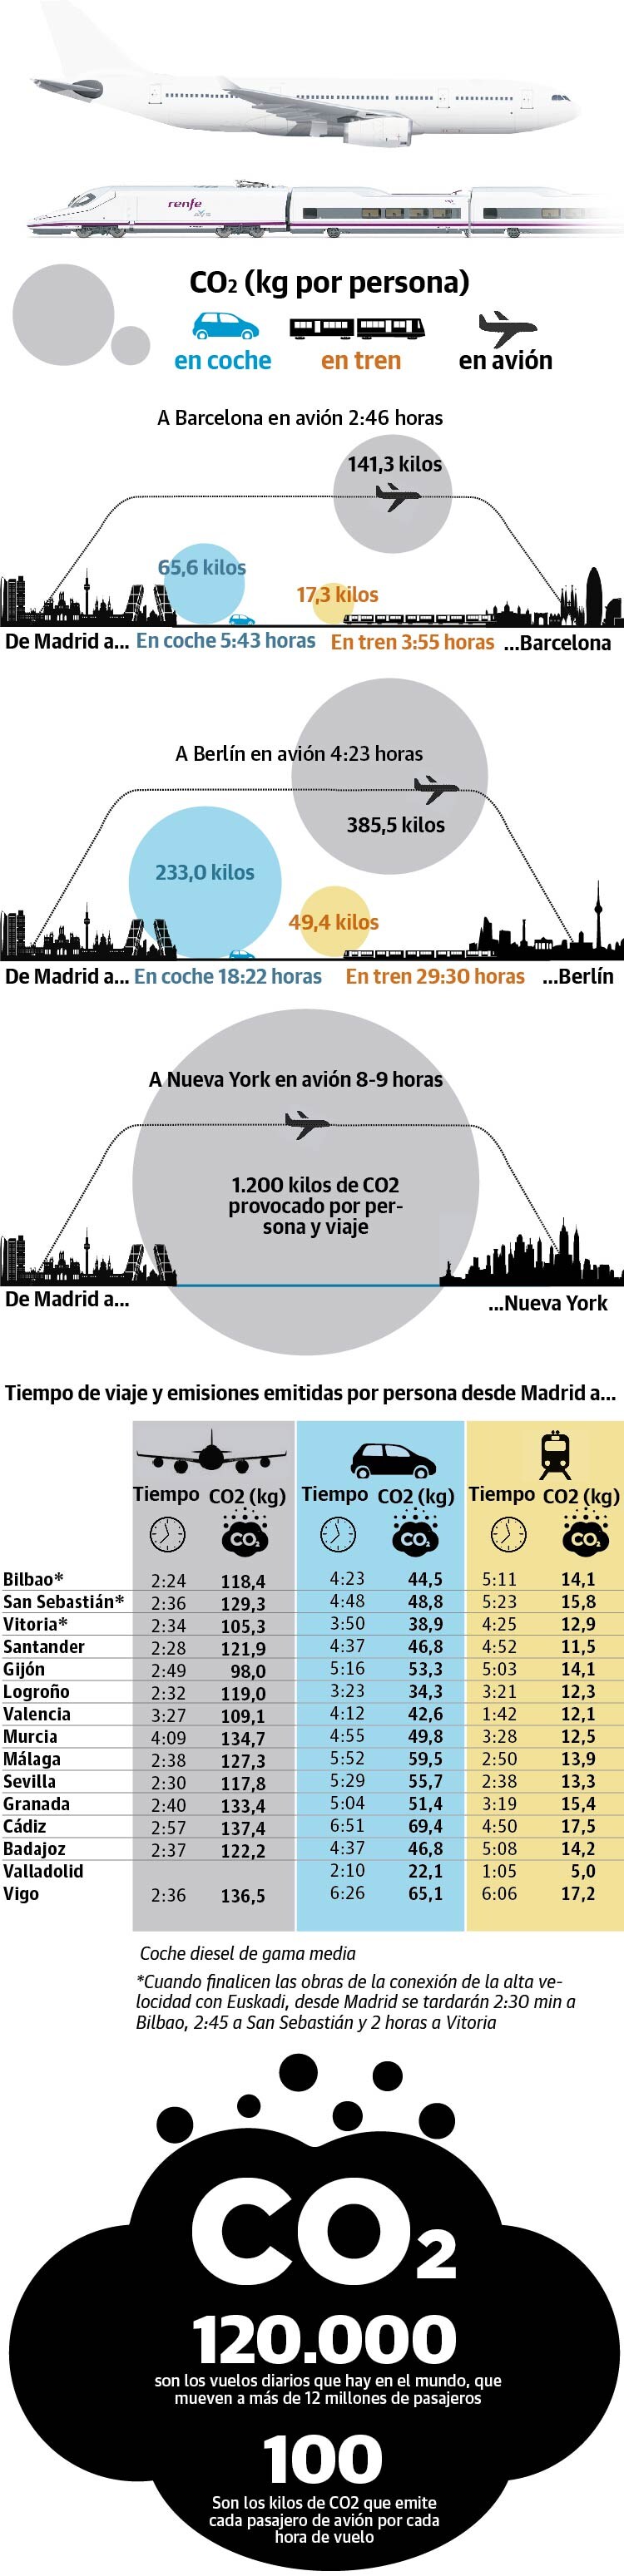 CO2 provocado por persona y viaje en avión